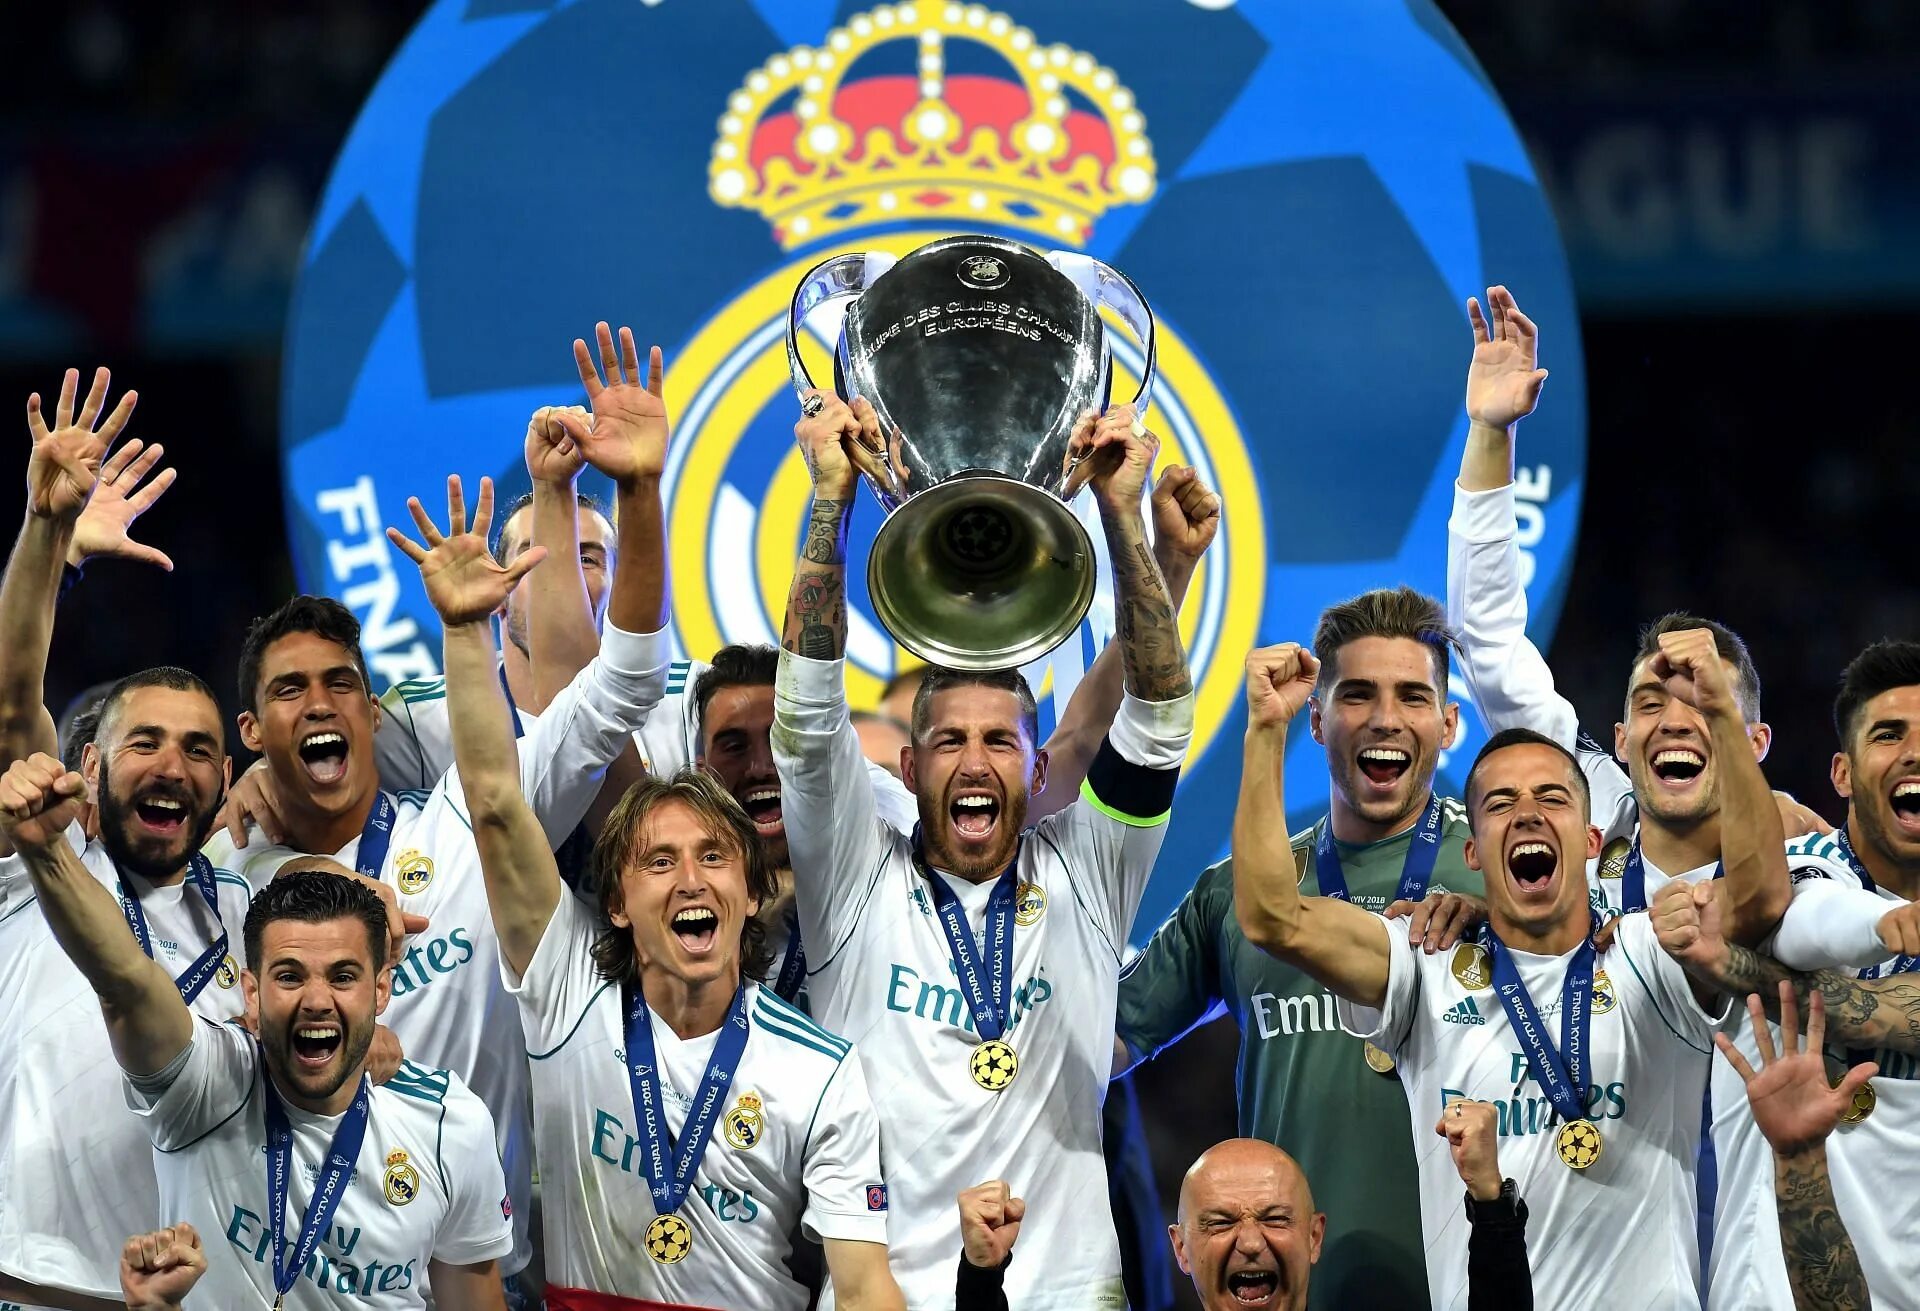 Реал Мадрид победитель Лиги чемпионов. Реал Мадрид чемпион Лиги чемпионов. Реал Мадрид чемпион Лиги чемпионов 2018. Реал Мадрид победитель Лиги чемпионов 2017. Real madrid champions